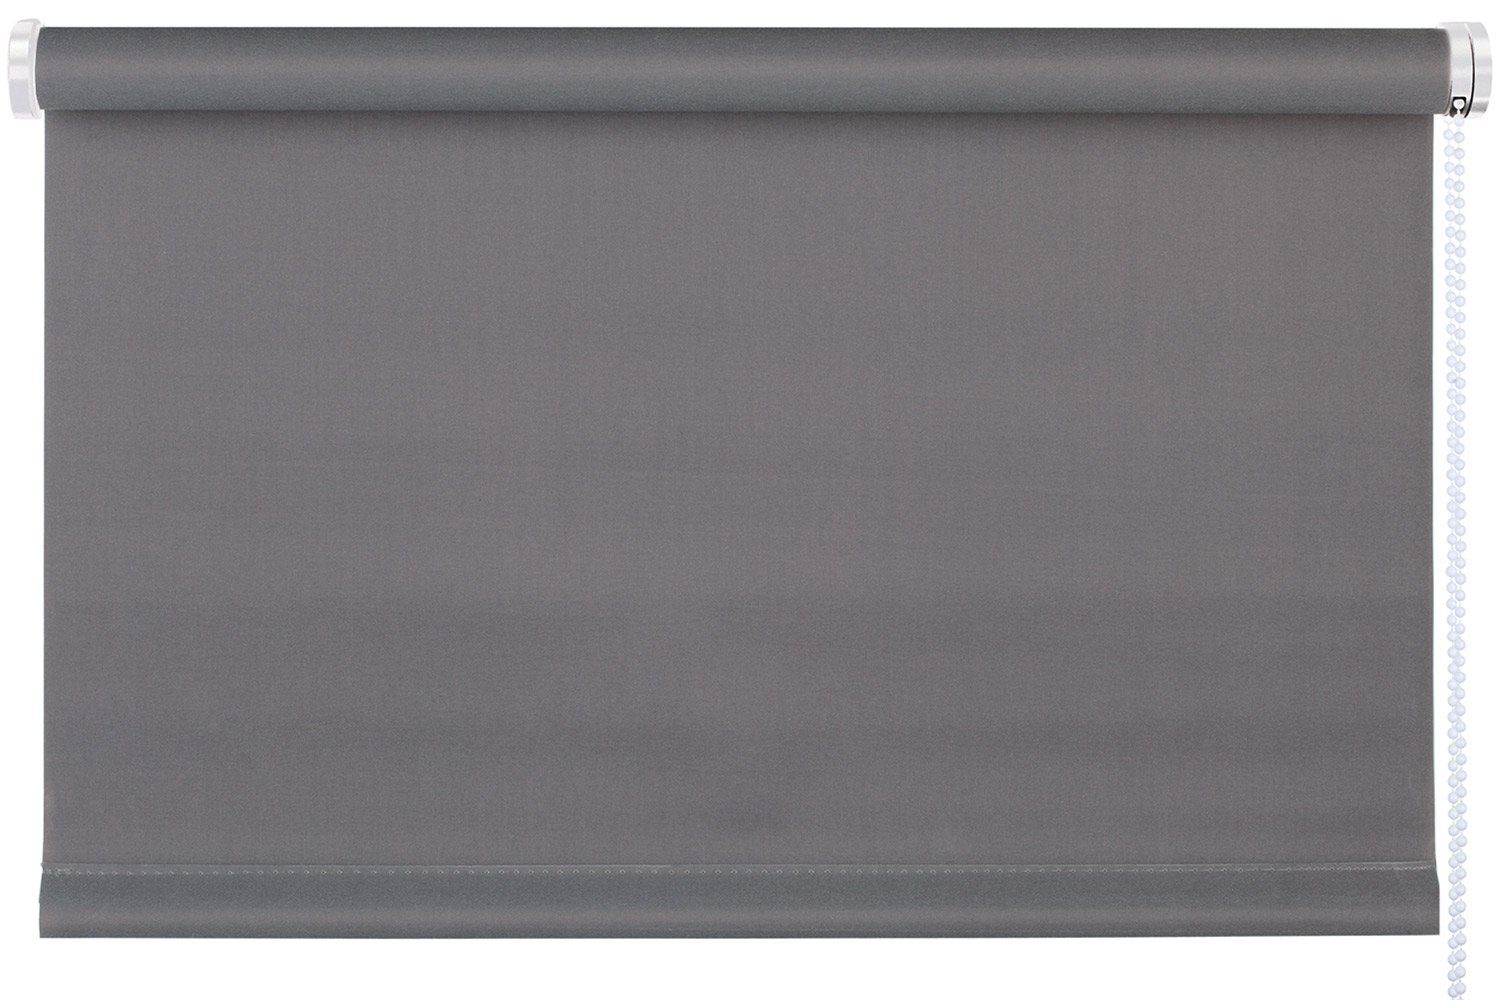 Rollo TREND, Design Rollo, Grau, B 60 x H 150 cm, mydeco, blickdicht, ohne Bohren, Klemmfix